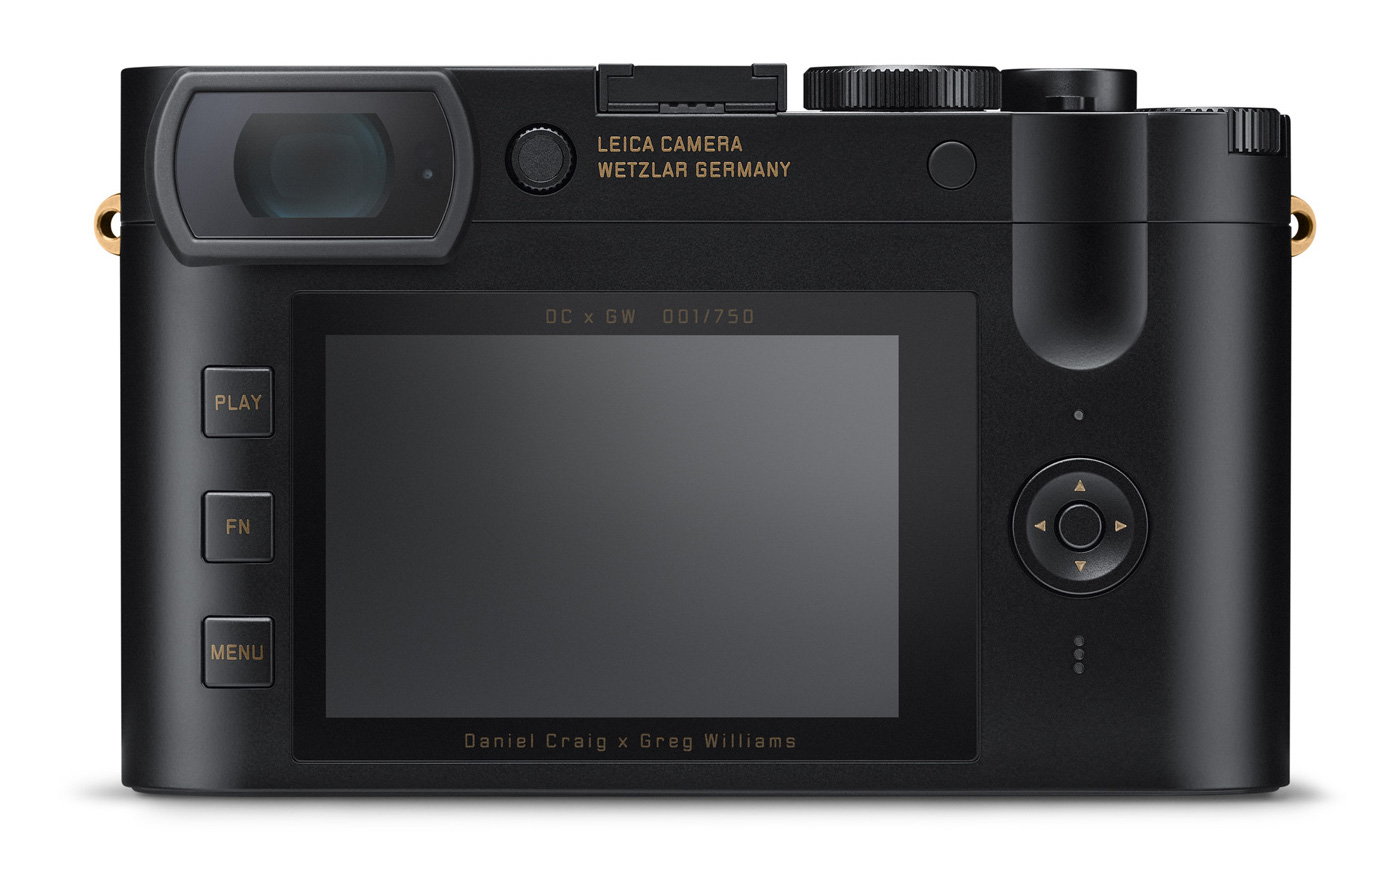 Leica-Q2-Daniel-Craig-x-Greg-Williams-limited-edition-camera-3.jpg